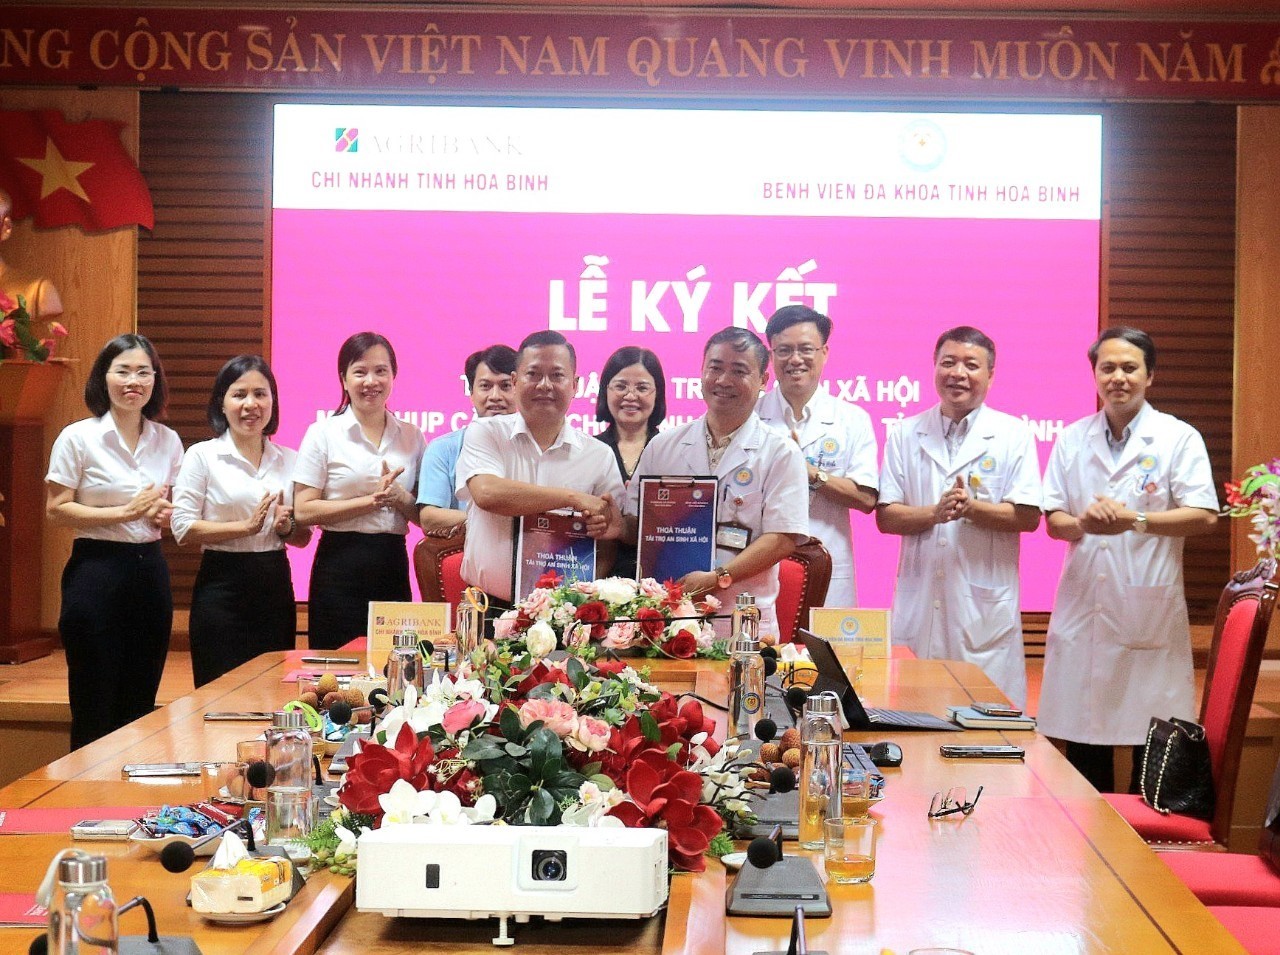  Lễ ký kết thoả thuận tài trợ an sinh xã hội máy chụp cắt lớp vi tính cho Bệnh viện Đa khoa tỉnh Hoà Bình